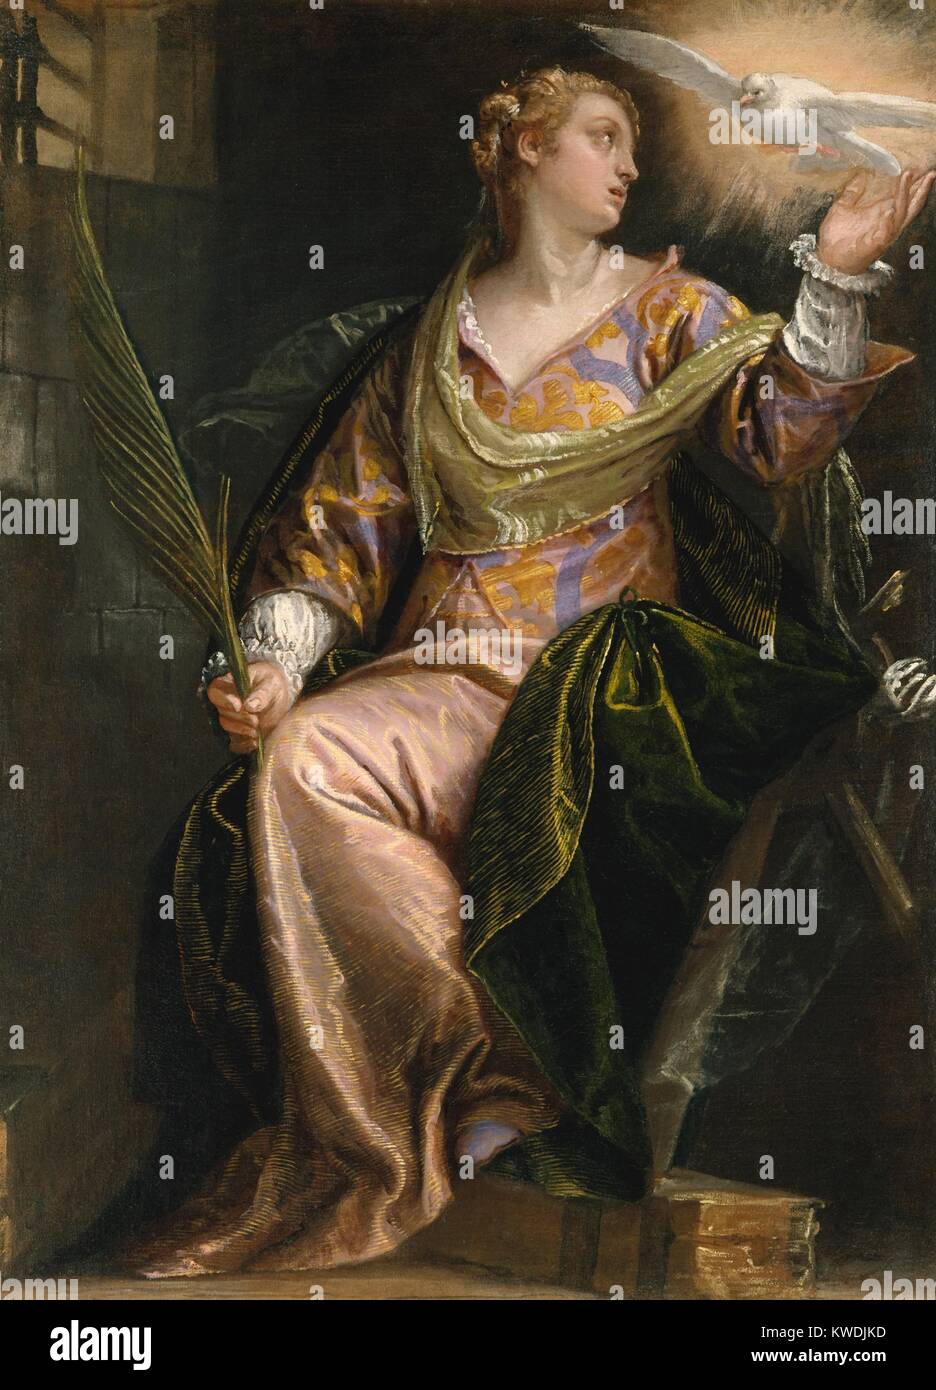 ST. CATHERINE D'ALEXANDRIE, EN PRISON, par Paolo Véronèse, 1580-85, la peinture italienne de la Renaissance. La jeune sainte est réconforté par la colombe du Saint-Esprit dans sa cellule de prison. À droite sont des fragments de la roue d'exécution, qui dissous à son contact, quand l'empereur Maxence d'abord essayé de la tuer. Elle a ensuite été martyrisés par décapitation et détient la palme des martyrs (BSLOC   2017 16 69) Banque D'Images